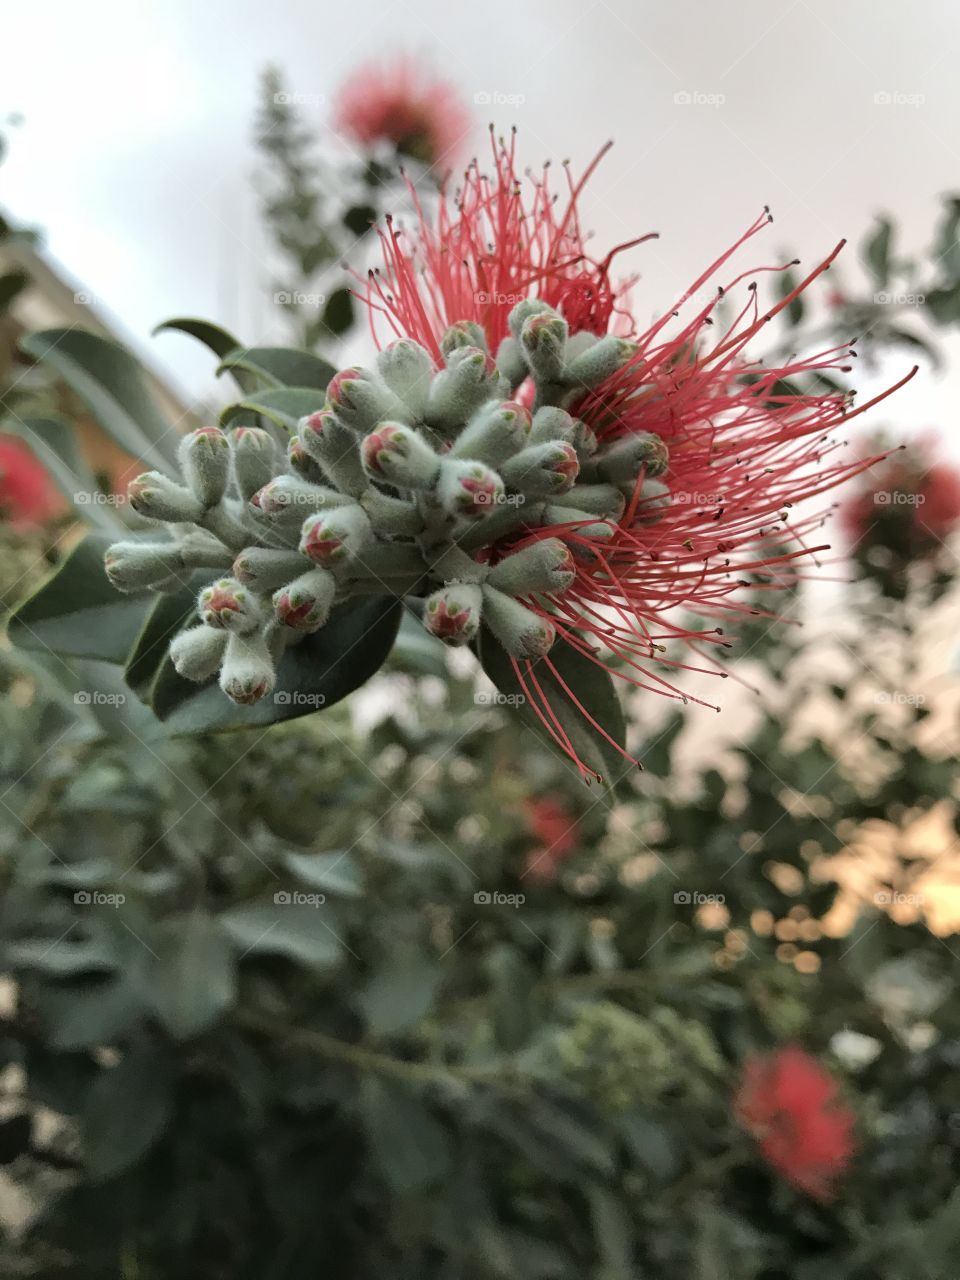 Flora at dusk